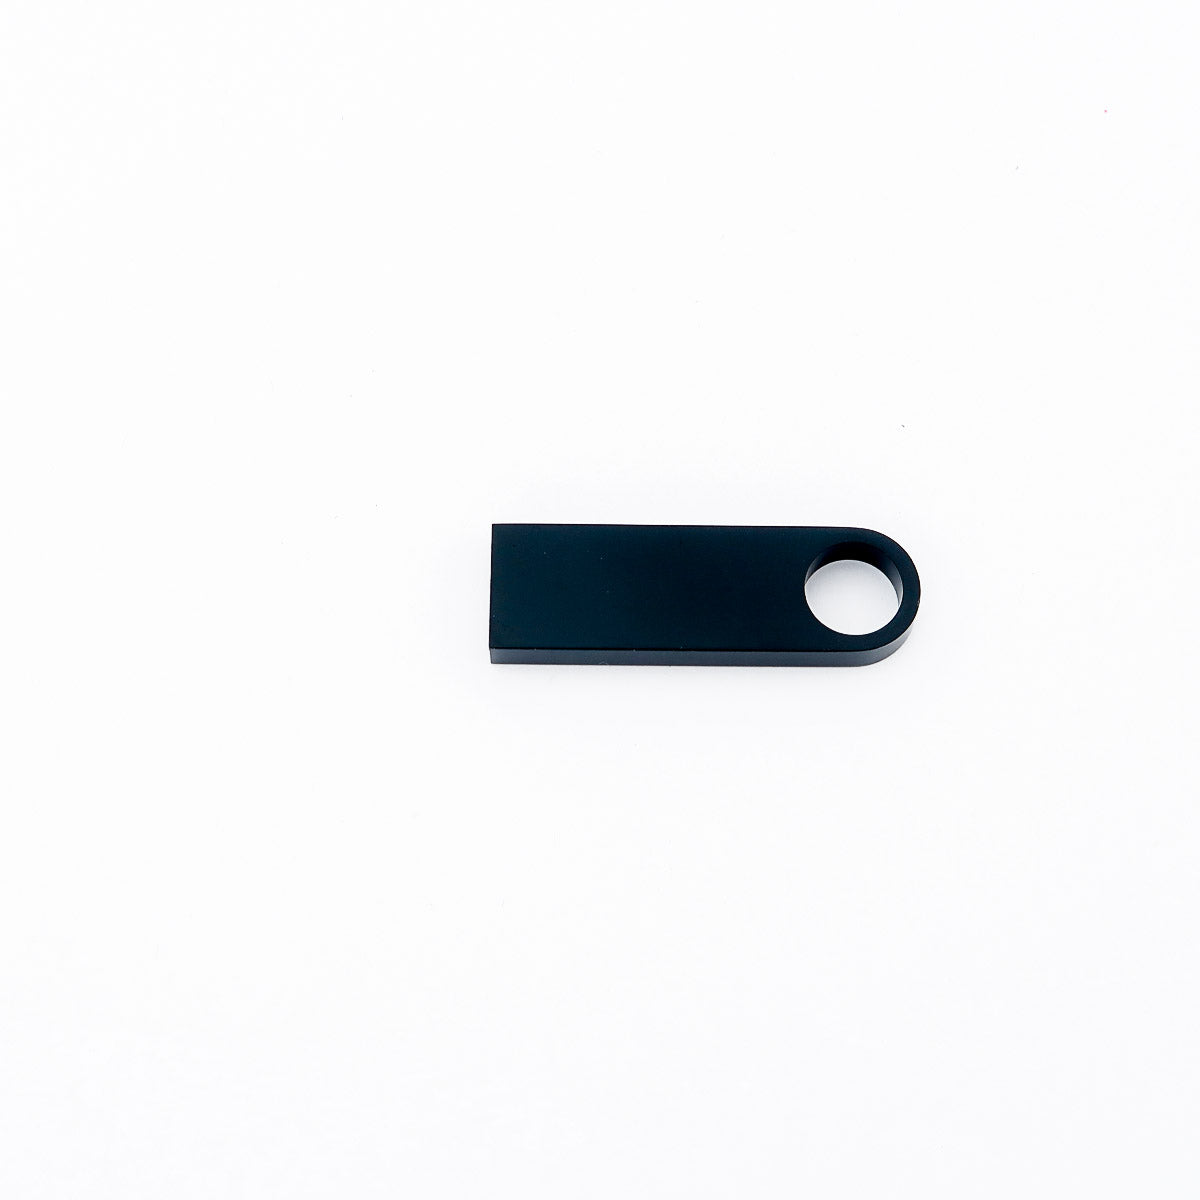 USB -tikku, joka on räätälöity kaiverruksella nimestä tai logosta